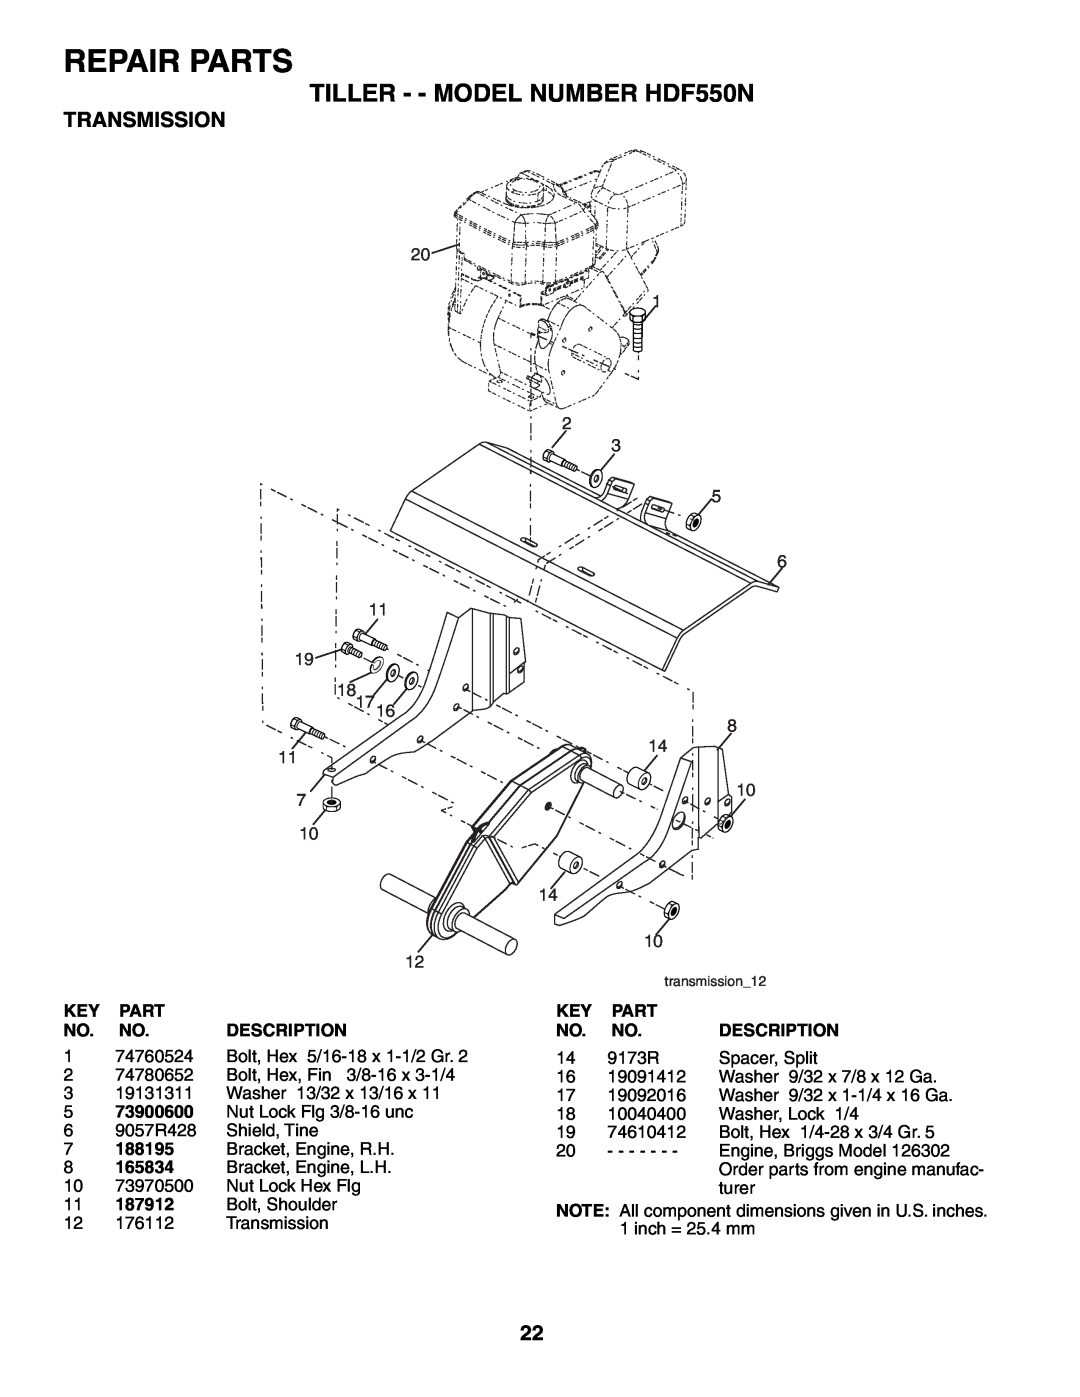 Poulan Repair Parts, TILLER - - MODEL NUMBER HDF550N, Transmission, Description, 73900600, 187912, 9173R, Spacer, Split 